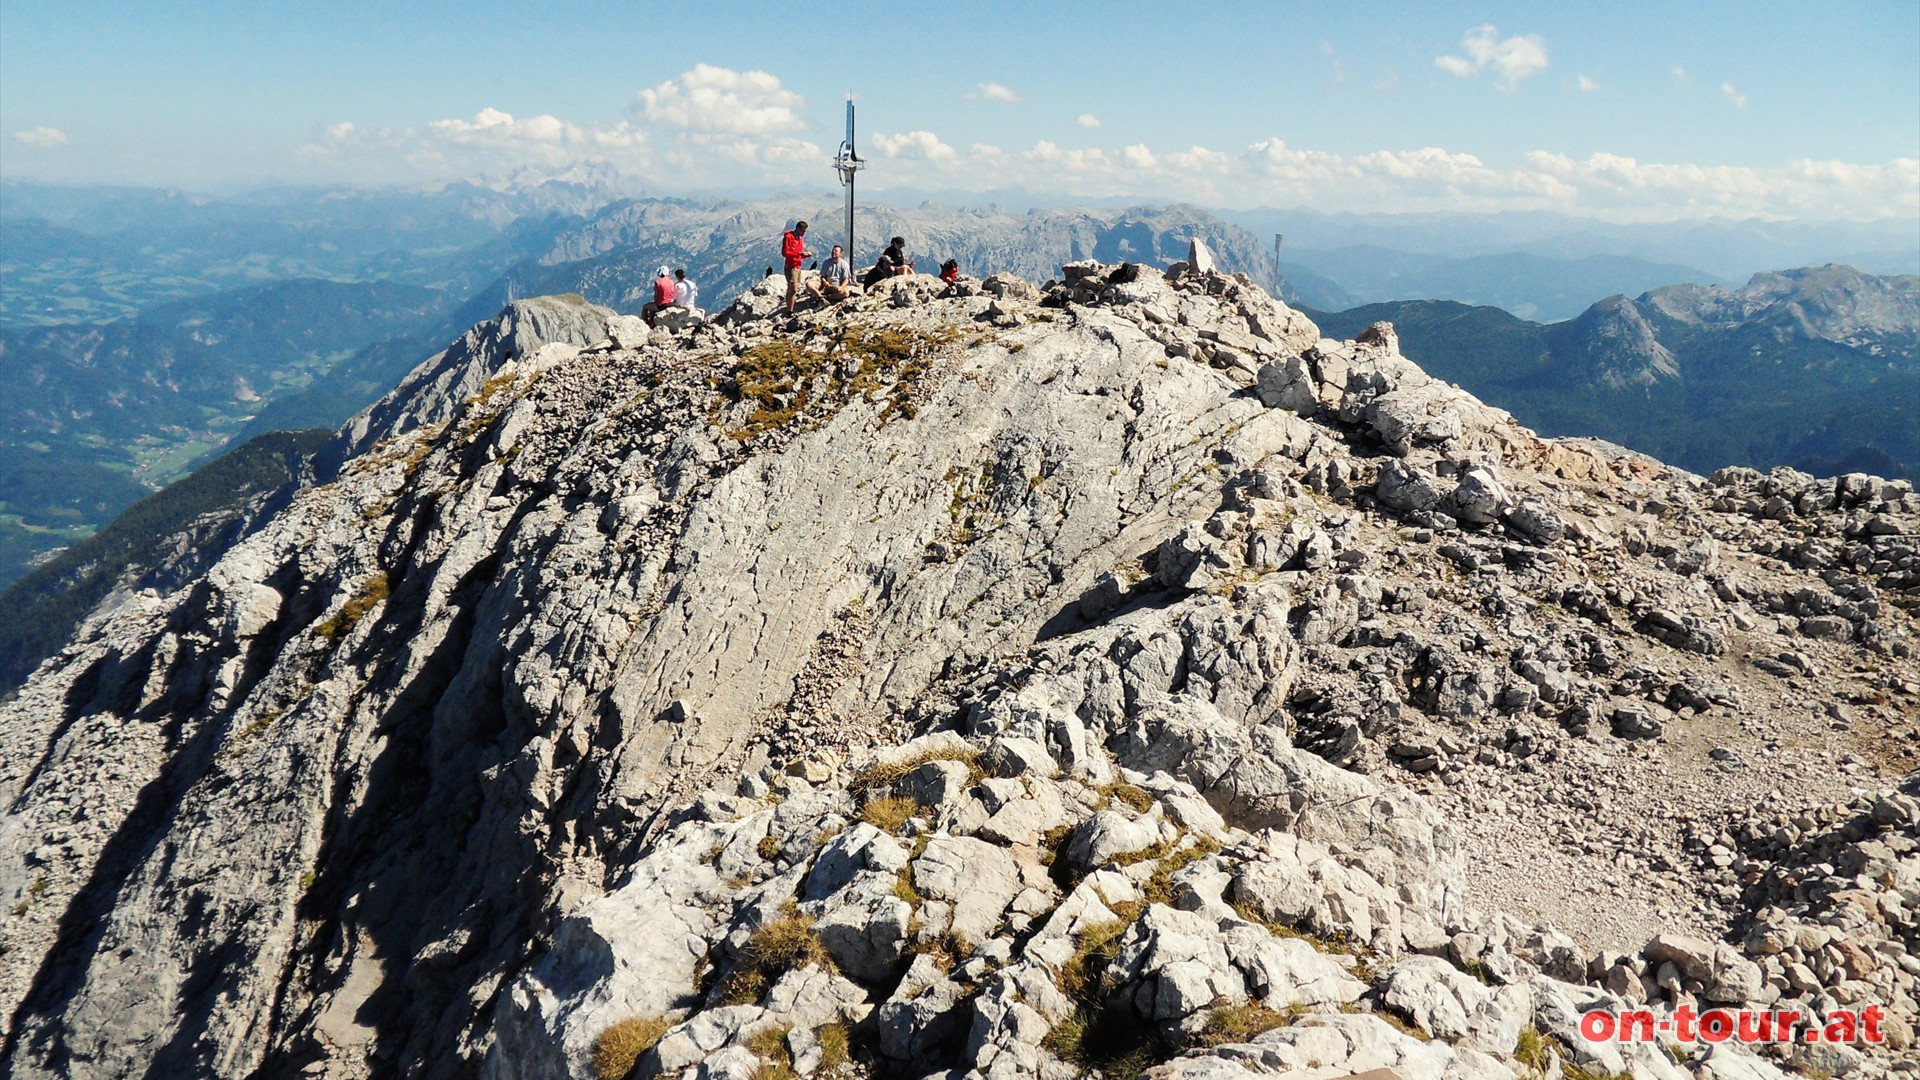 Nach etwa 5 Stunden ist der Gipfel erreicht. Das Panorama ist sagenhaft. Ein weiter Blick ber das gesamte Salzburger Land ist inkludiert.